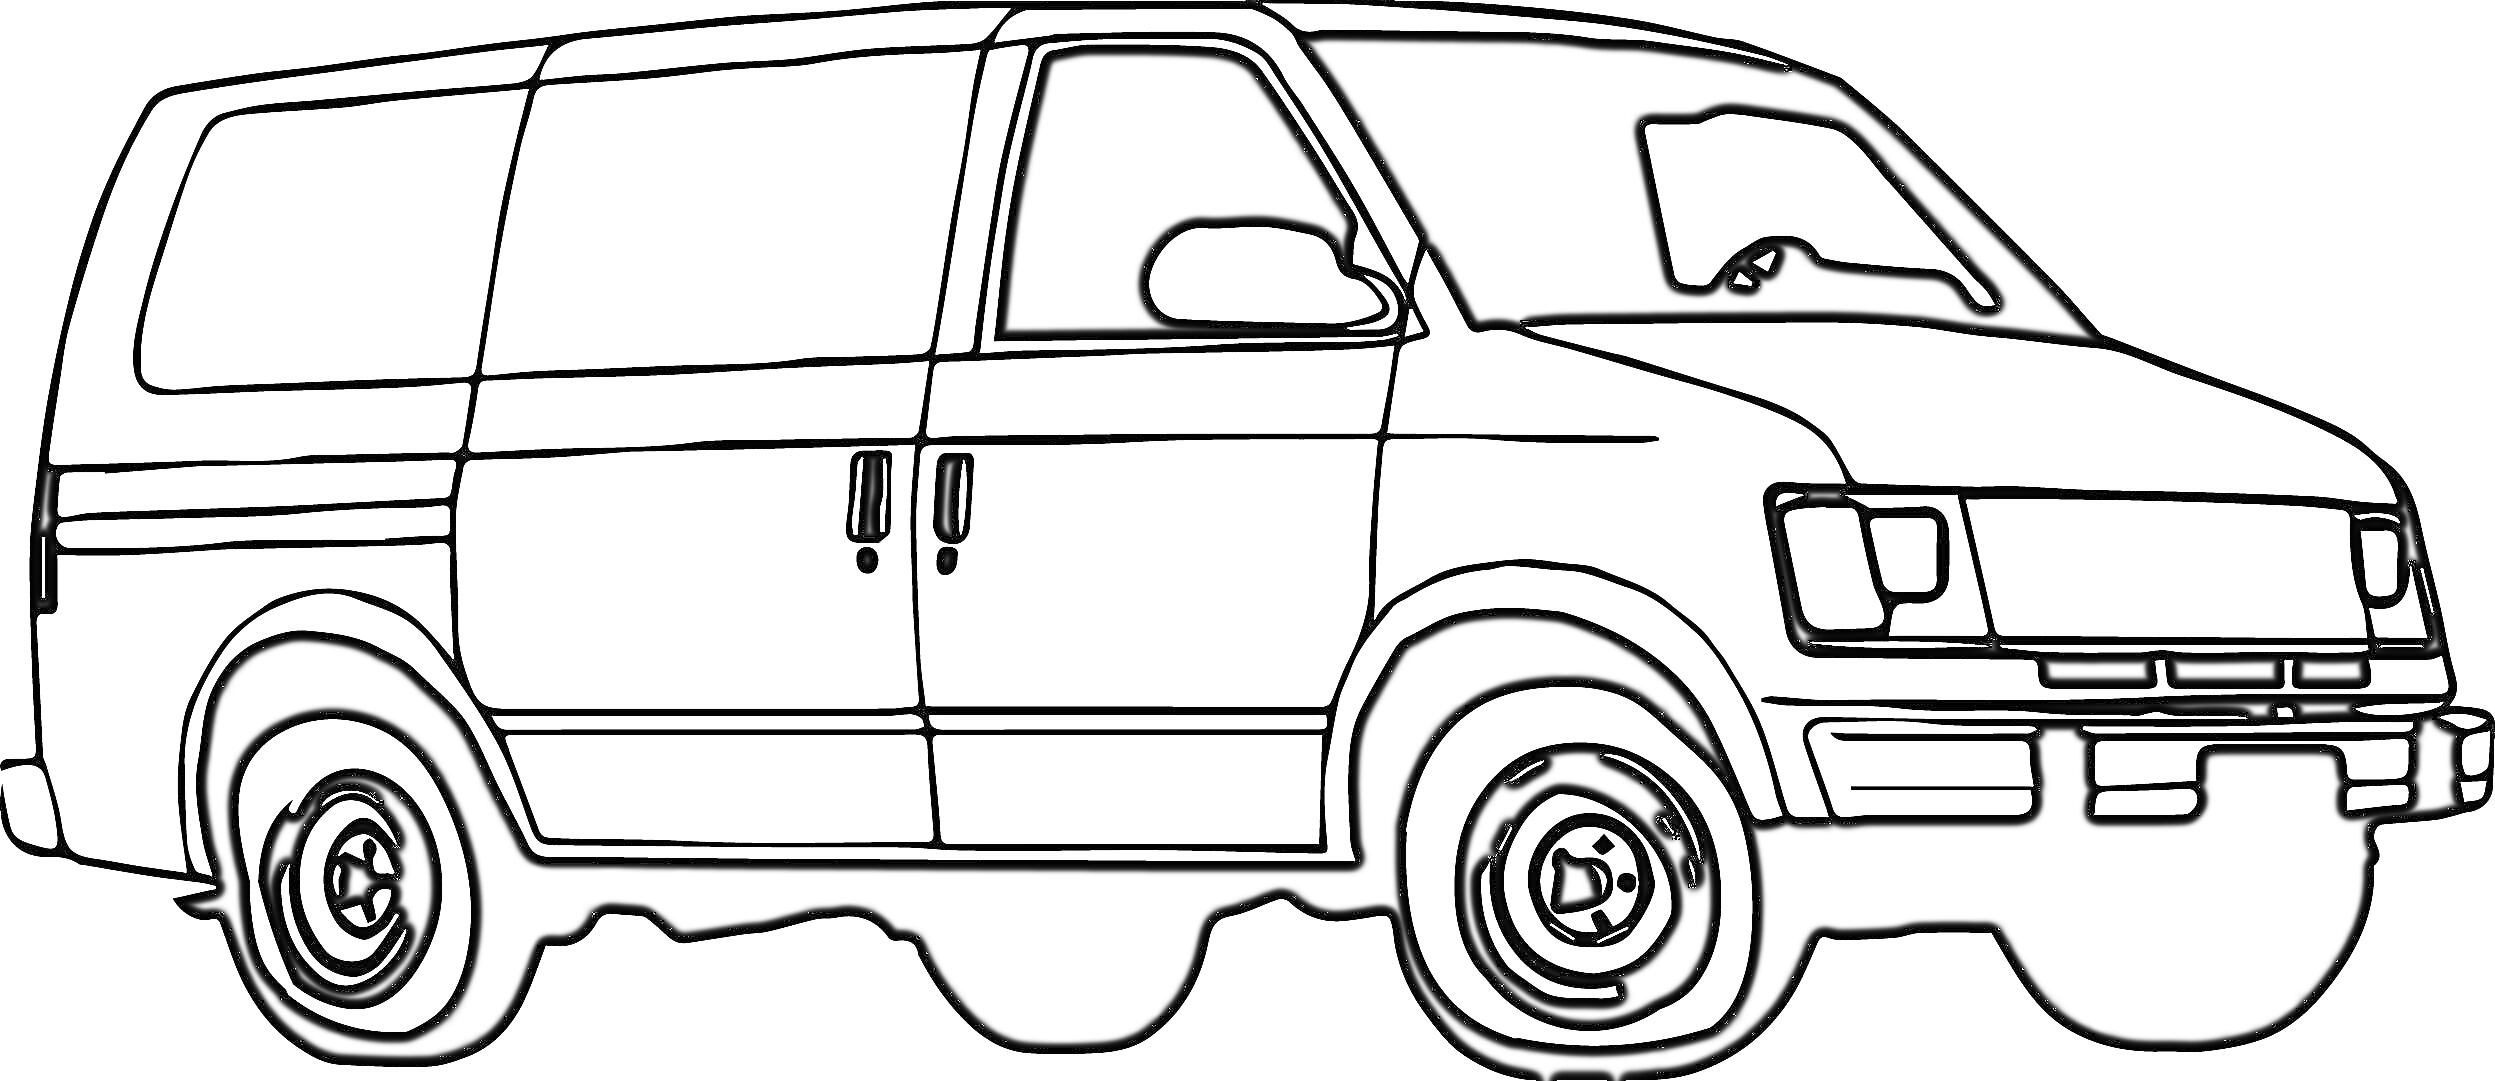 Раскраска Фургон с дверями и окнами на боковой стороне, с передними фарами и колесами